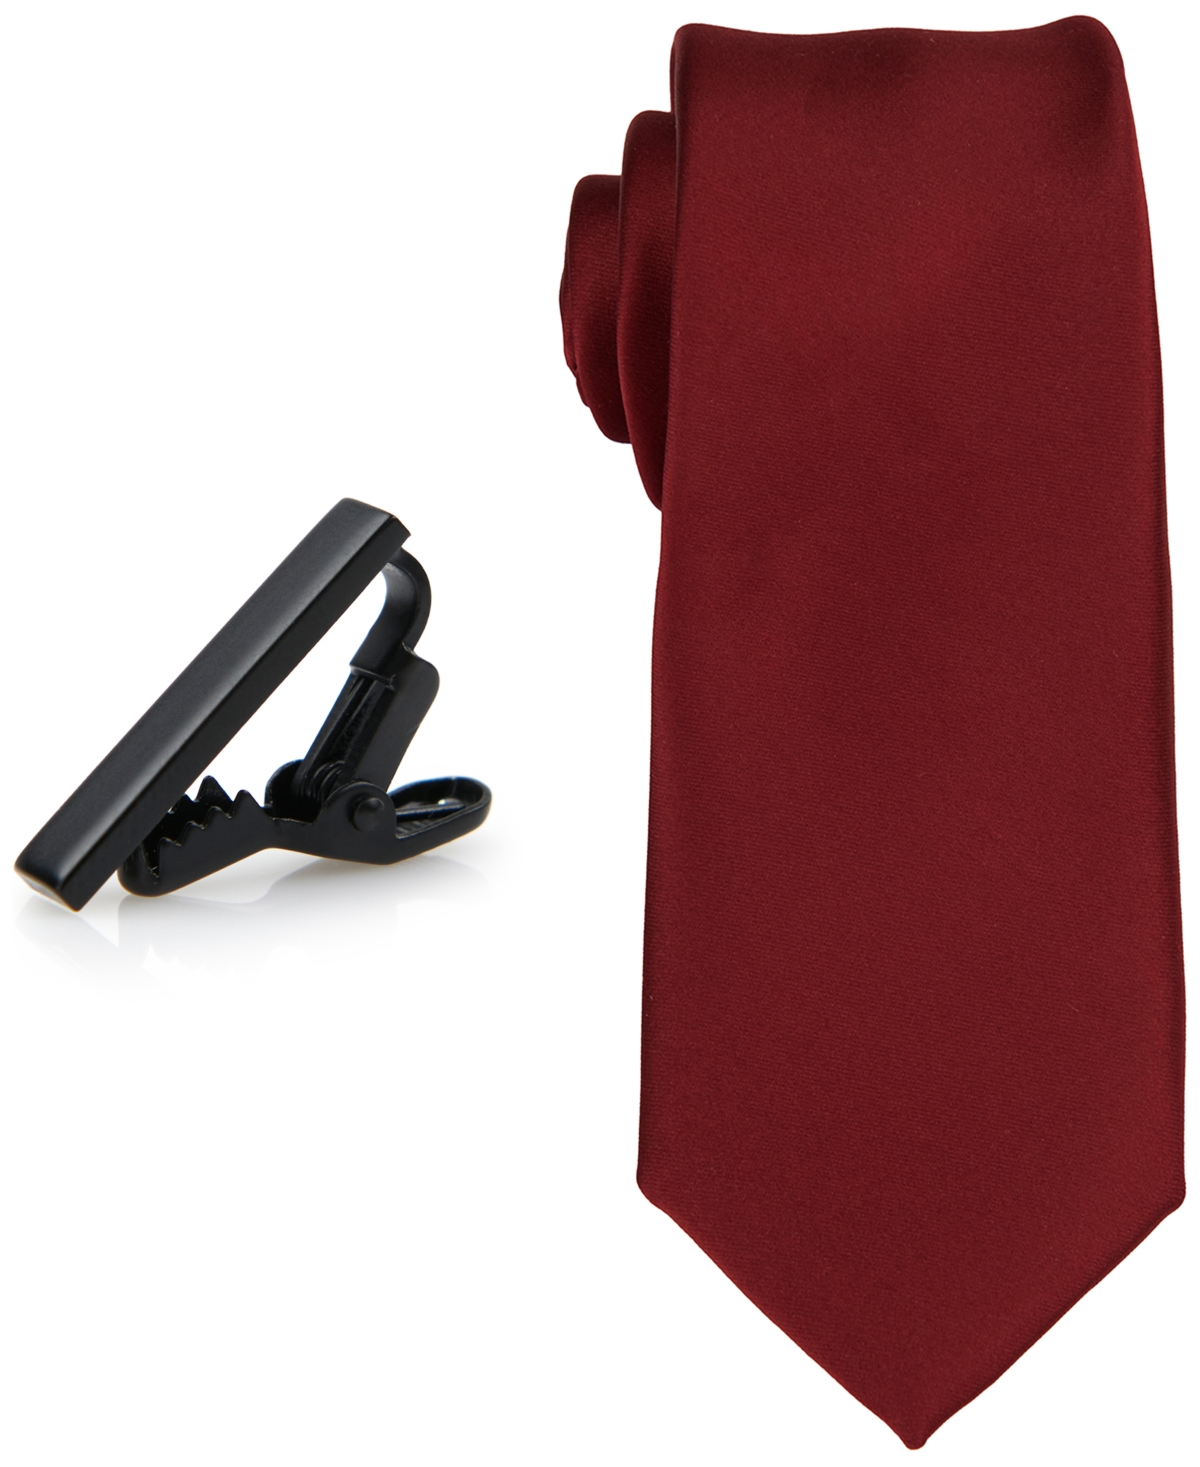 ConStruct Men's Solid Tie & 1" Tie Bar Set